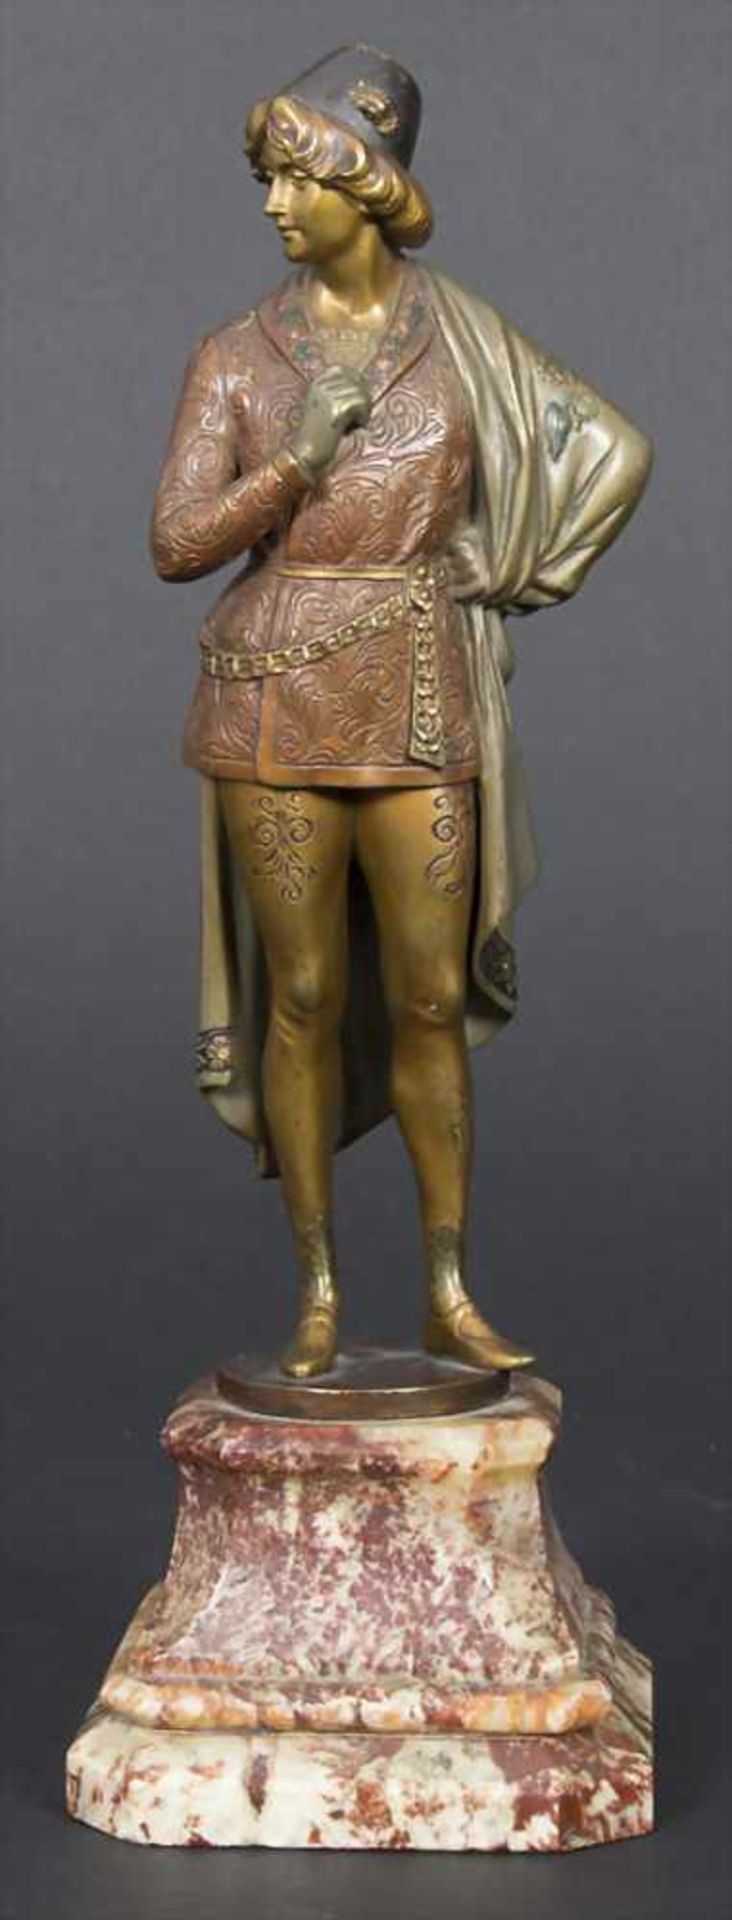 Jugendstil Skulptur, Adliger-Jüngling, Keck Hans (1875-1941)Material: Bronze, polychrom patiniert,